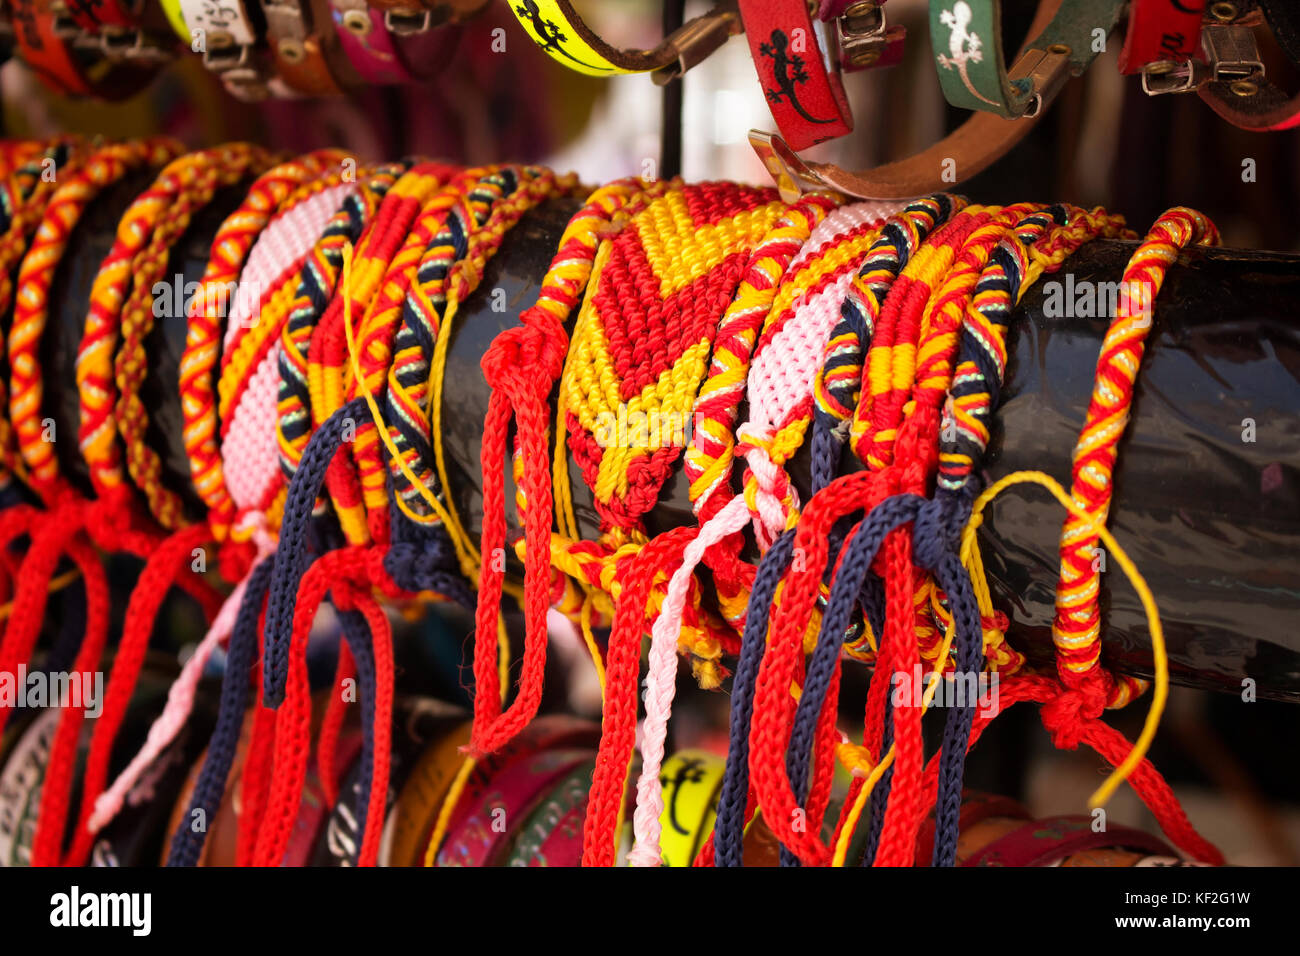 Vue en gros de bracelets colorés en Ibiza montrant / reflétant la culture  et le mode de vie de la région. couleurs du drapeau espagnol (rouge et  jaune) sont dominants Photo Stock -